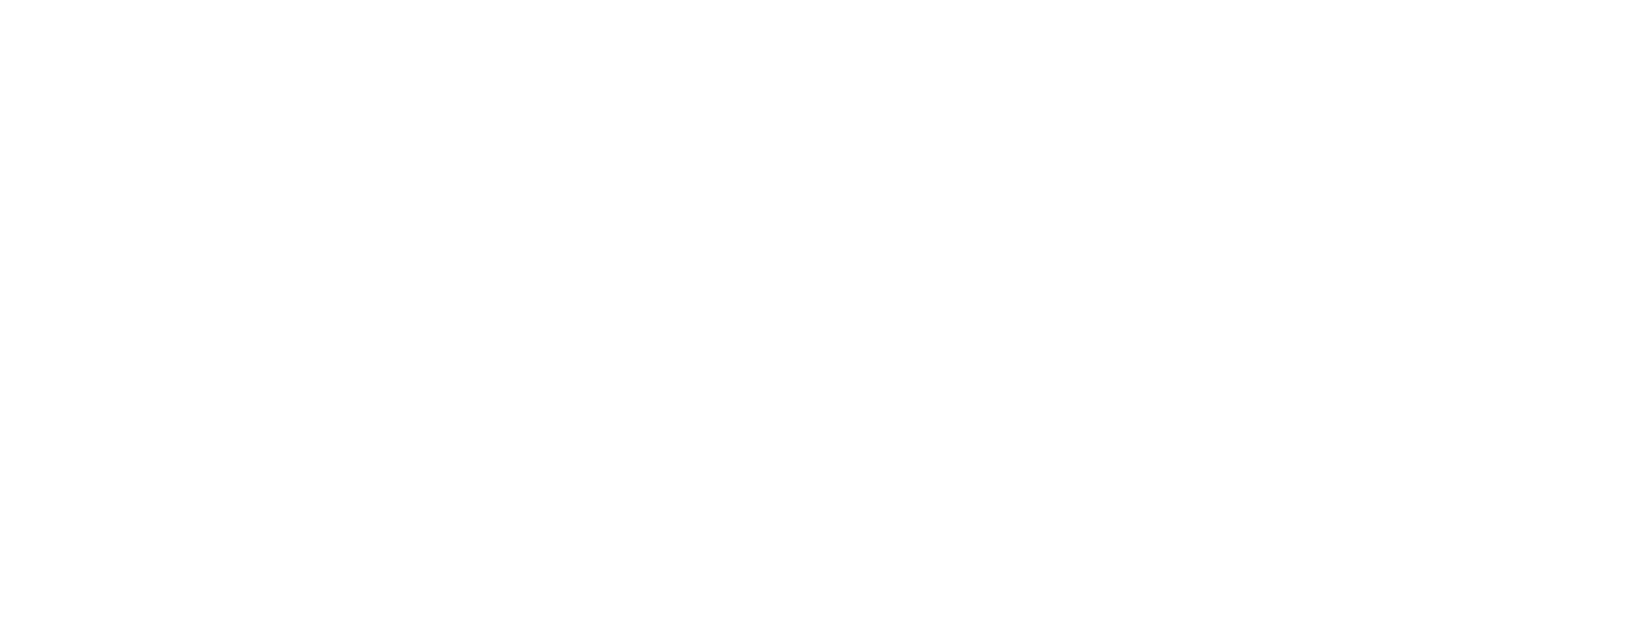 York Logo - YORK